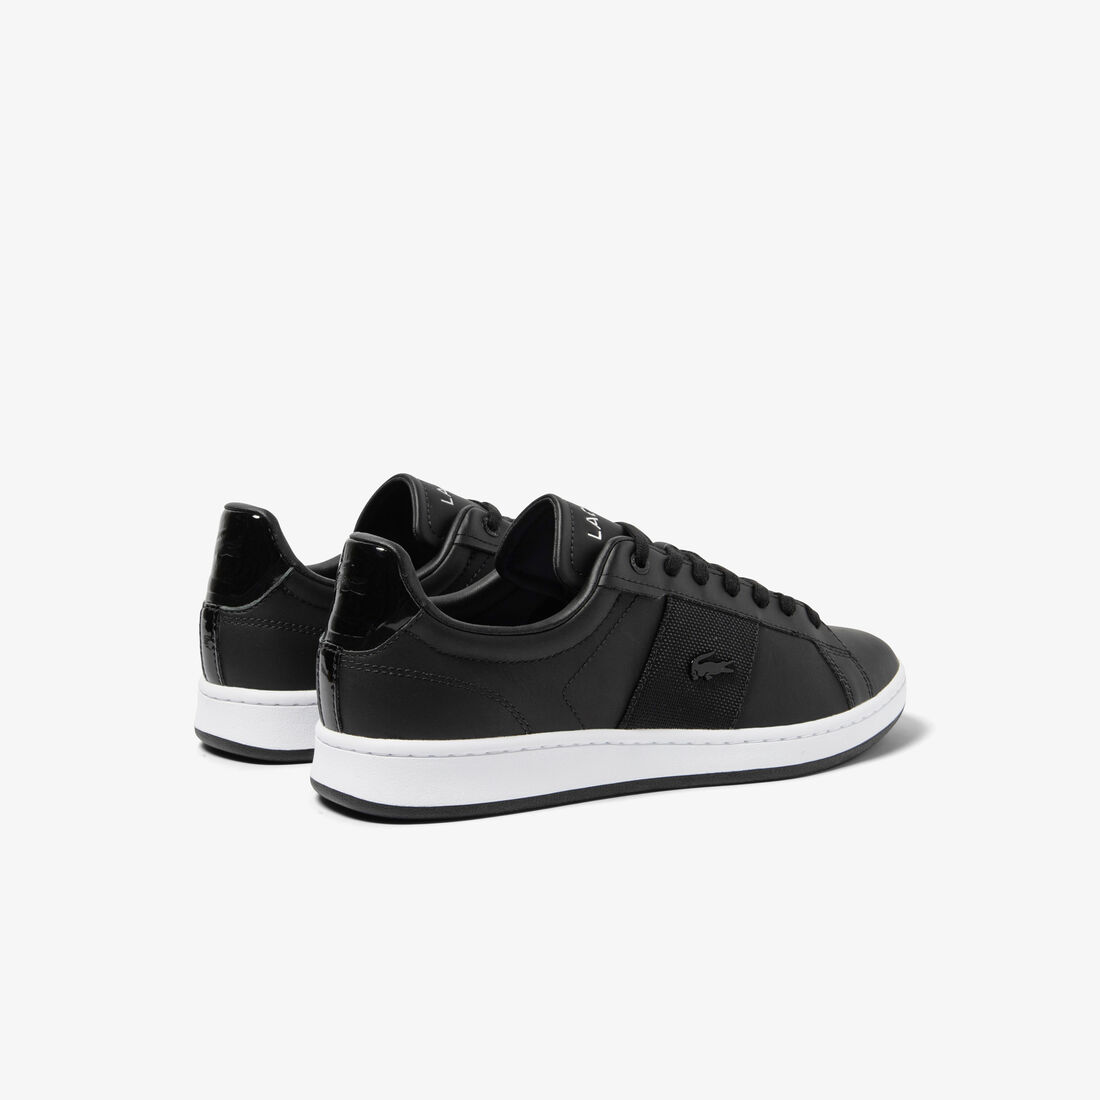 Lacoste Carnaby Pro Leder Premium Sneakers Herren Schwarz Weiß | IZRC-80259